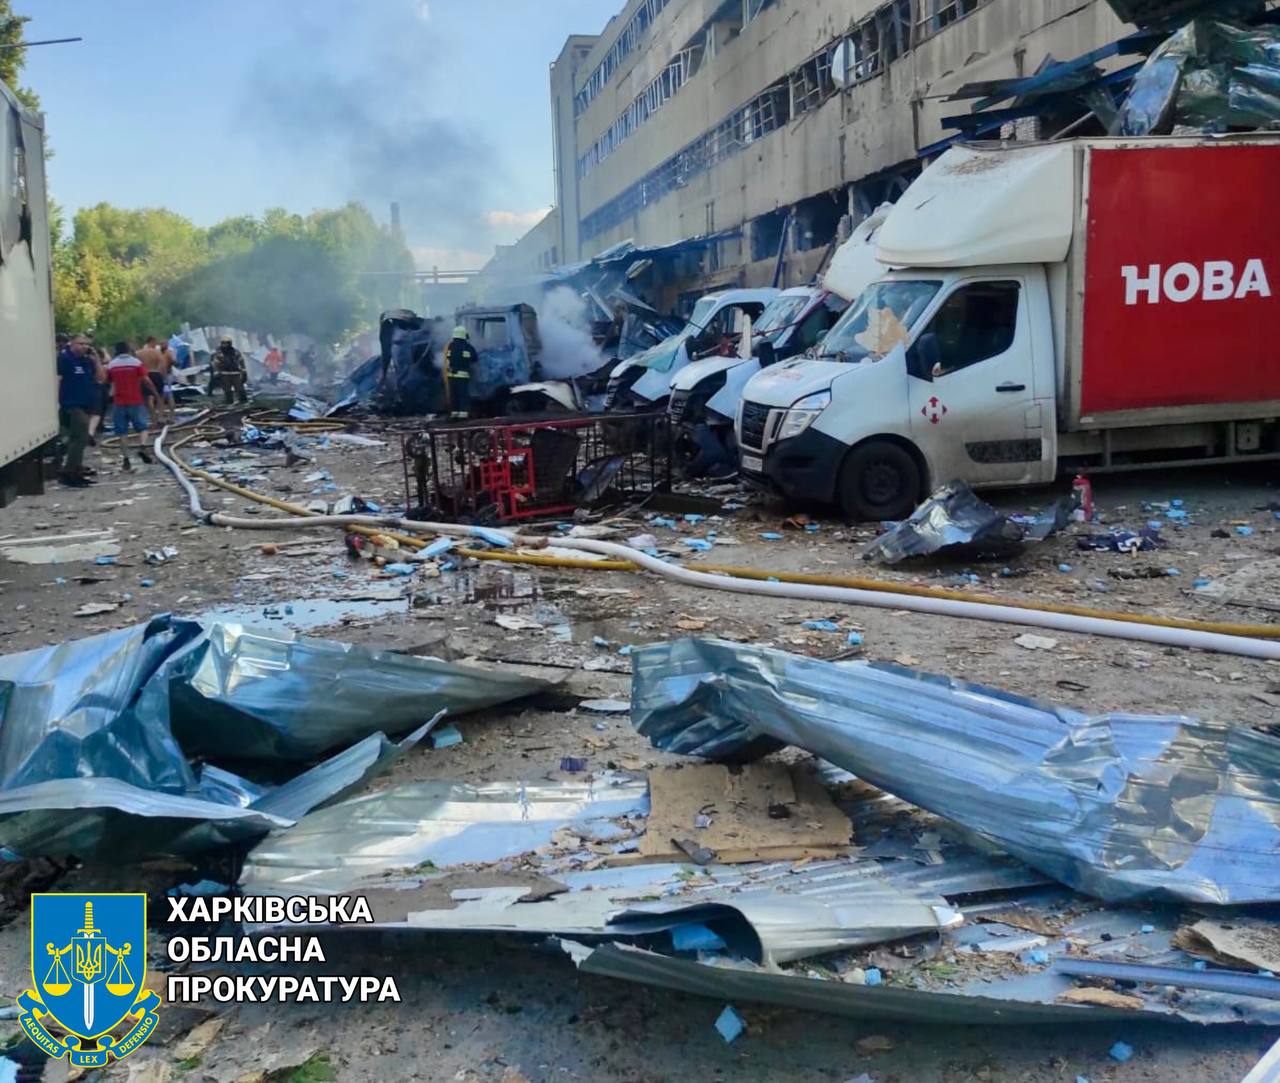 Оккупанты ударили по терминалу "Новой почты" в центре Харькова